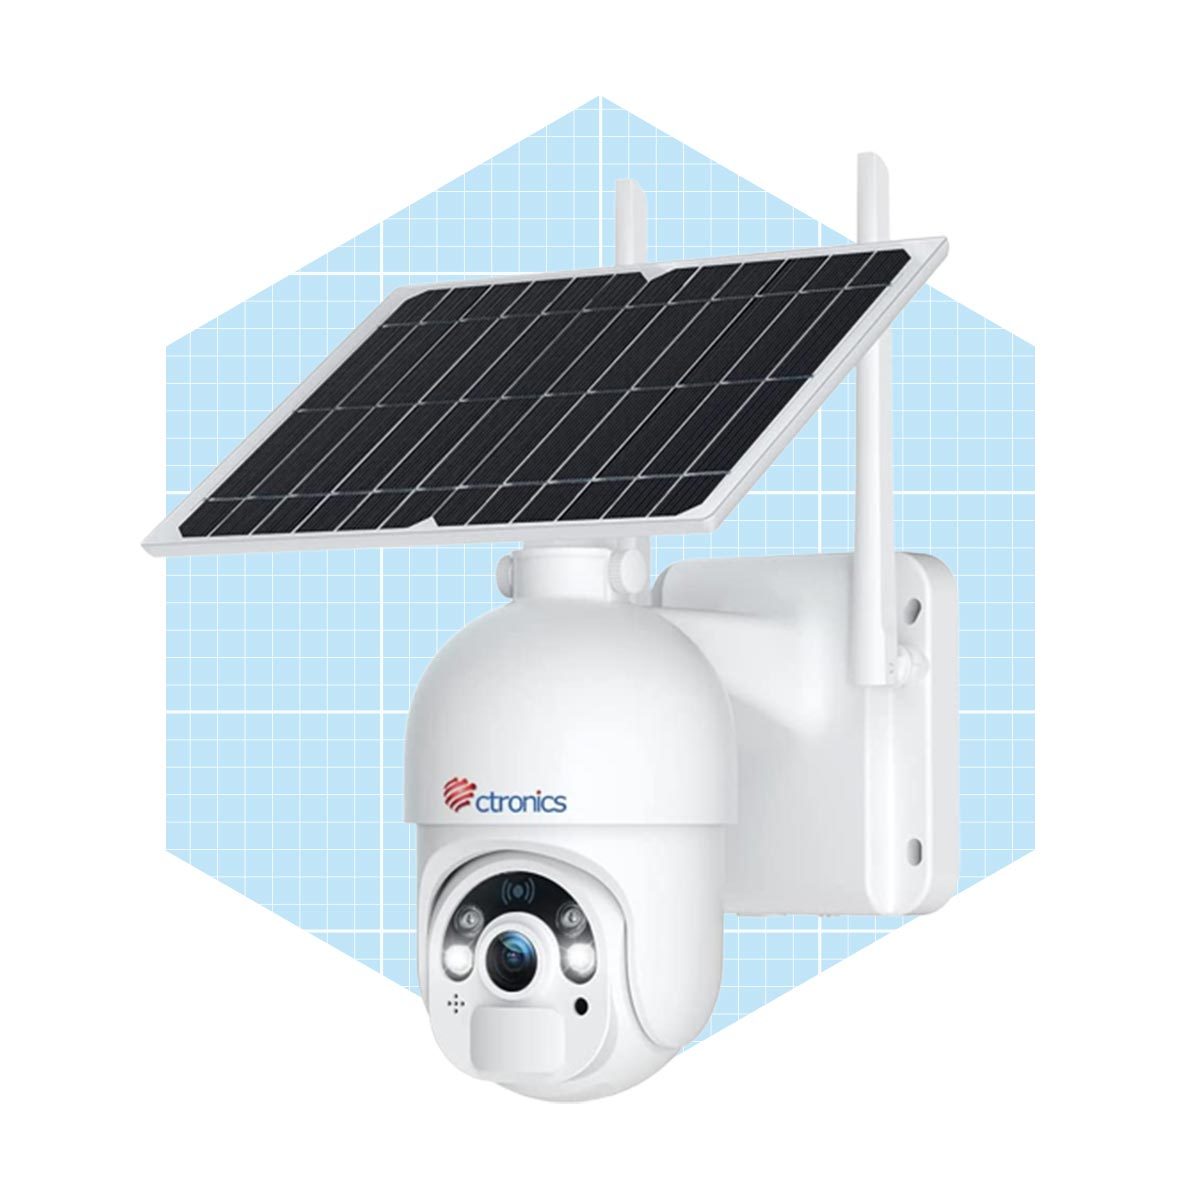 Ctronics Solar Powered Security Camera